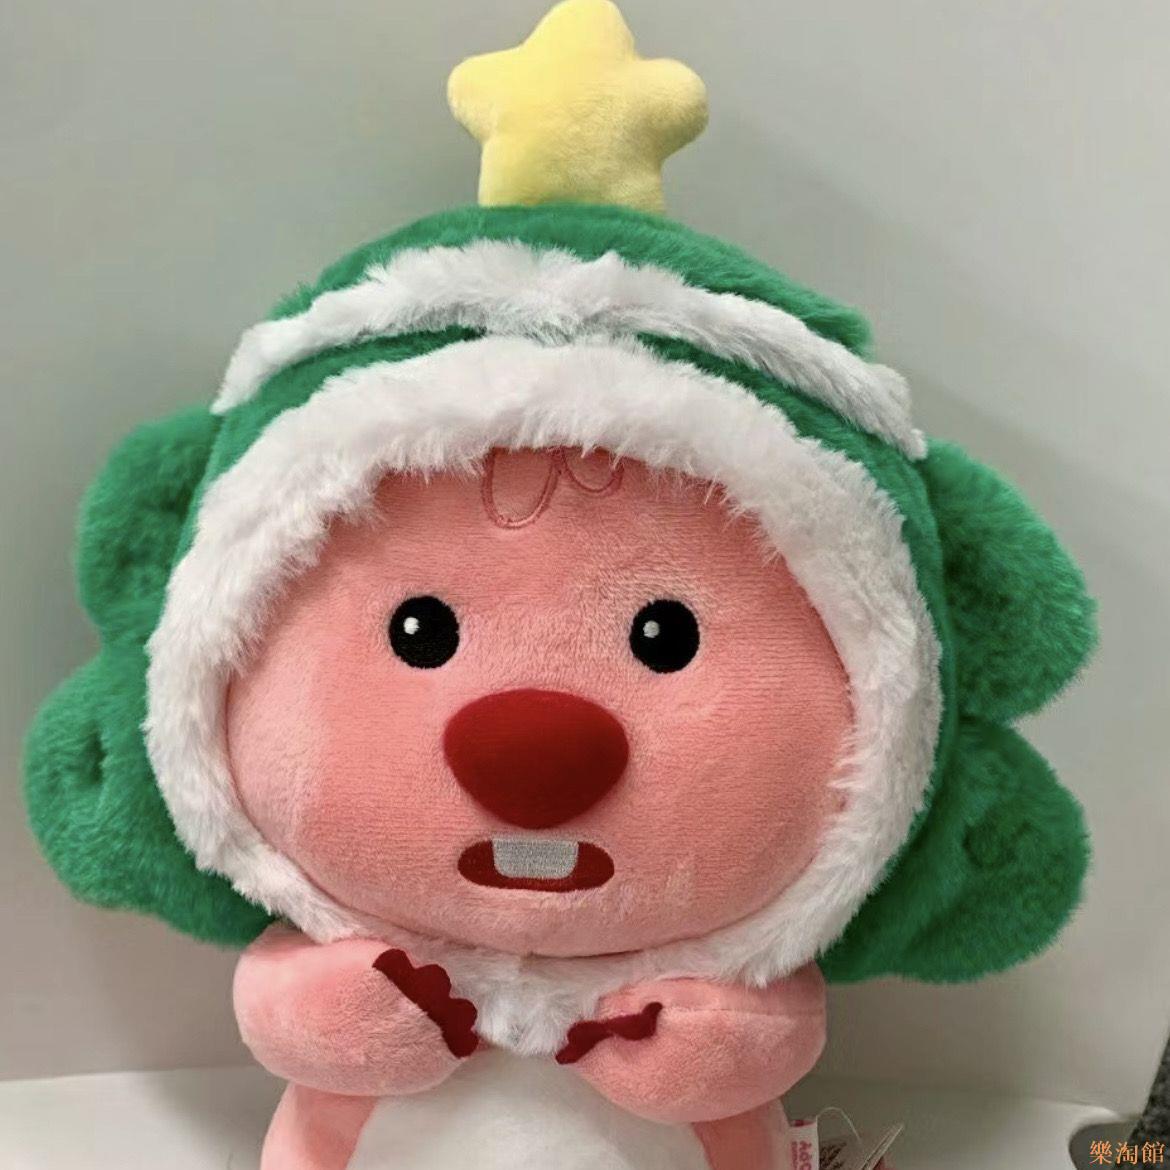 海貍露比圣誕系列麋鹿小雪人公仔頭套可愛玩偶超萌毛絨玩具